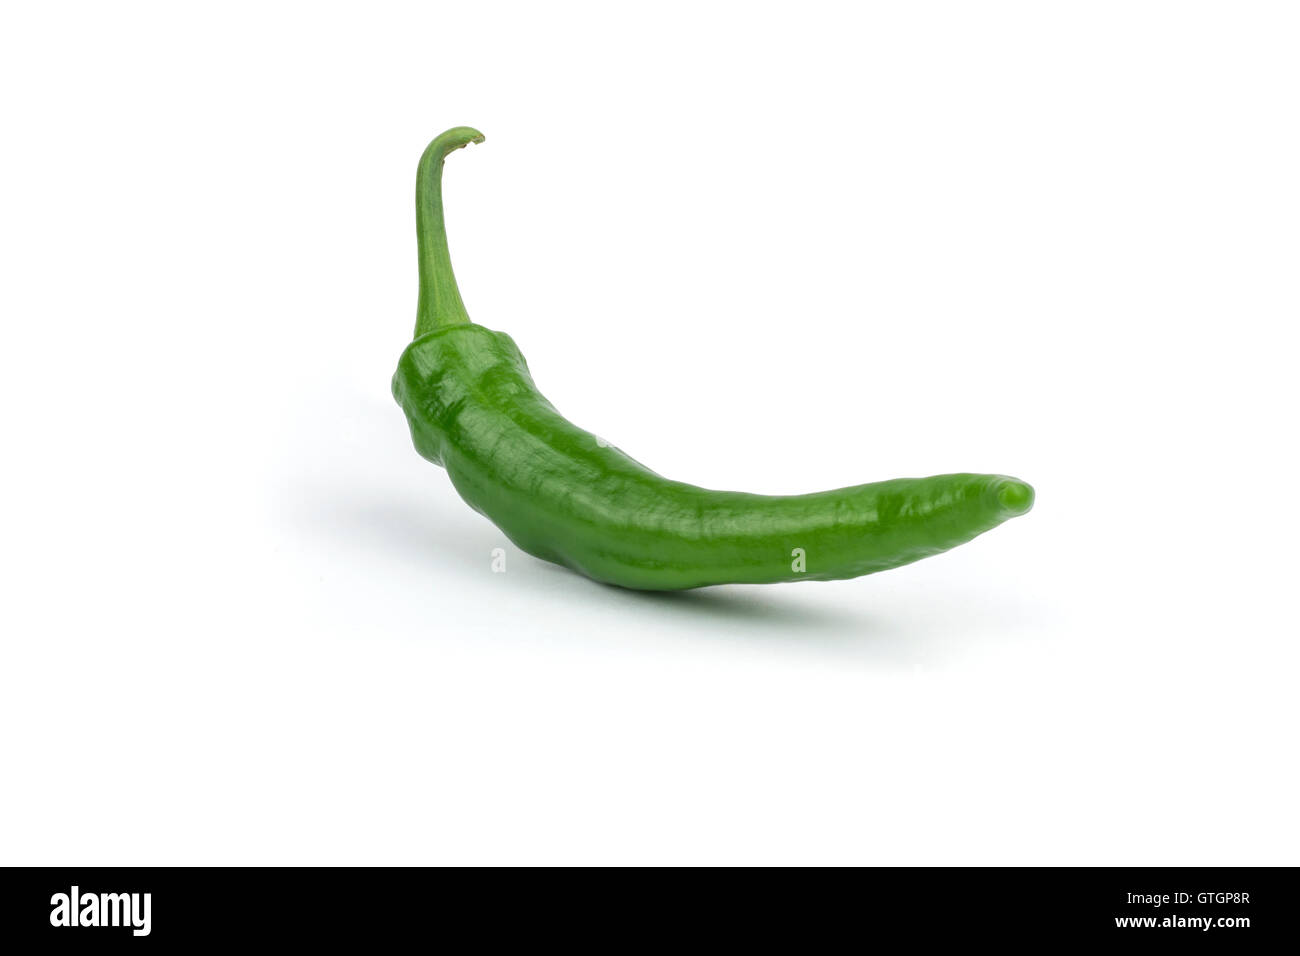 Hot pepe verde/s isolati su sfondo bianco. Percorso di clipping incluso in formato jpeg. Foto Stock